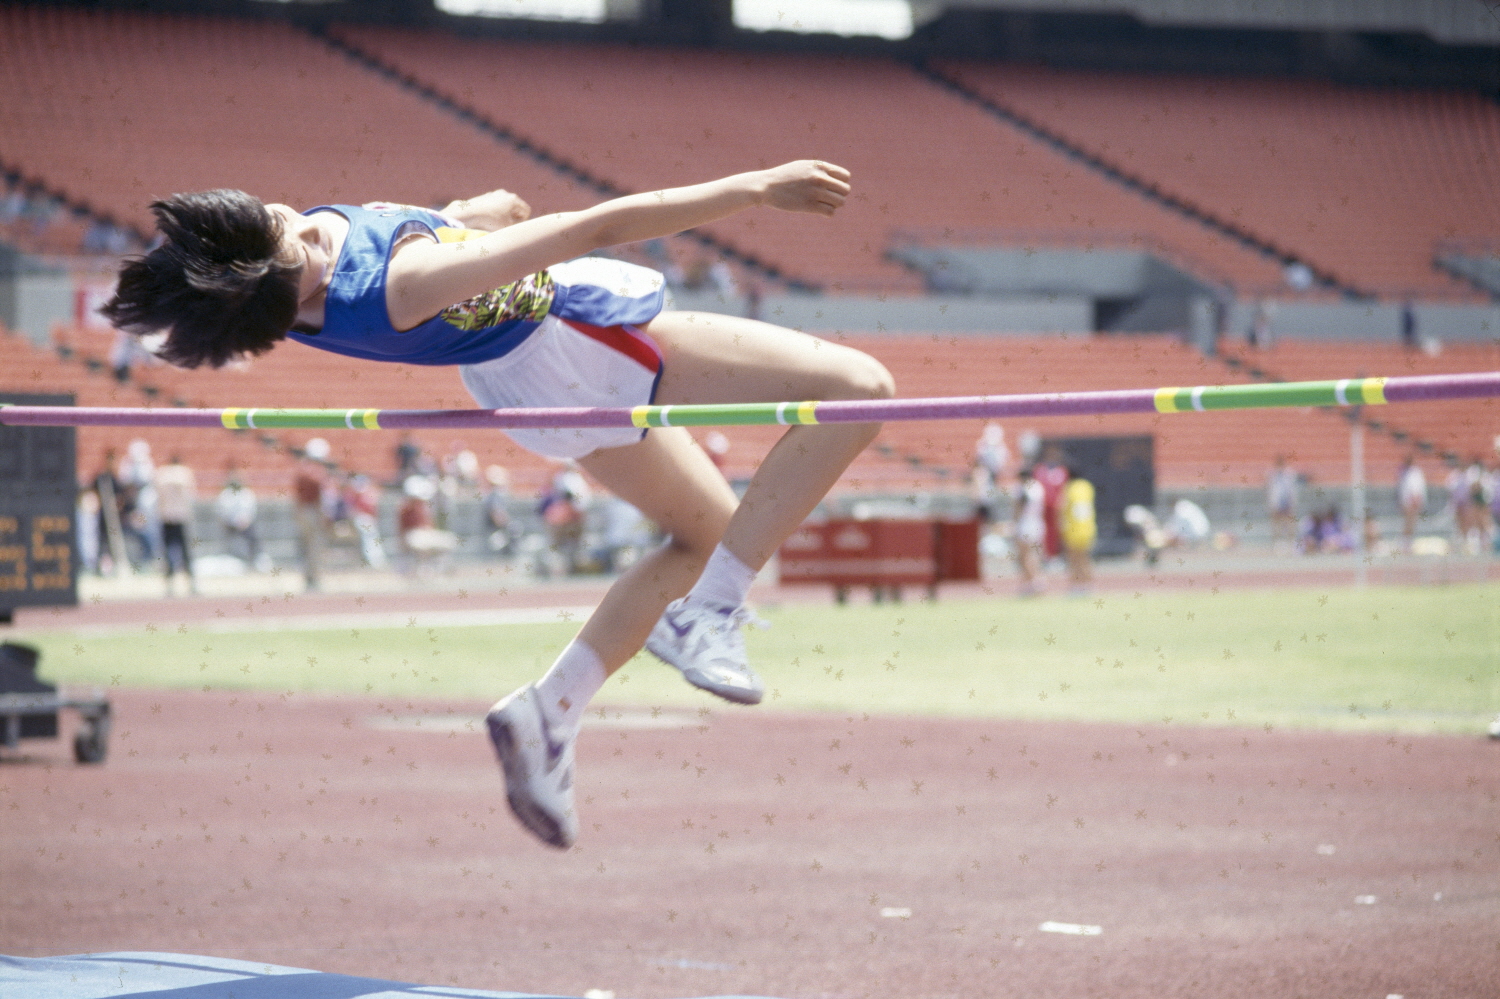 제22회 전국소년체육대회(하키, 육상 높이뛰기)